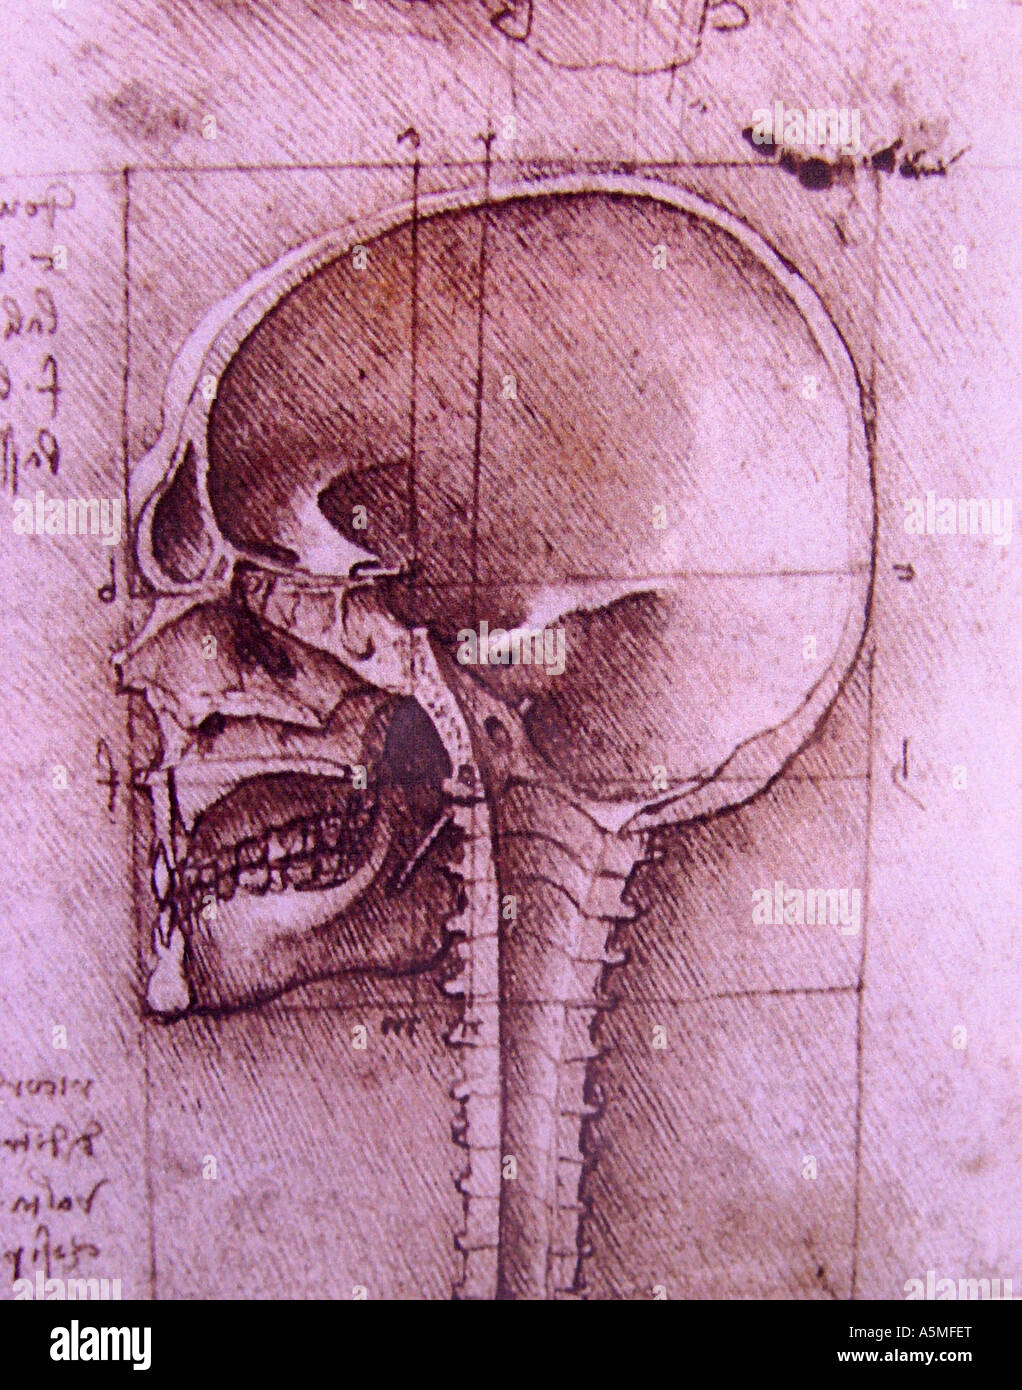 Anatomische Zeichnung von Leonardo da Vinci Medizinische Studien des menschlichen Koerpers Anatomisches Studienblatt welches bei Stock Photo